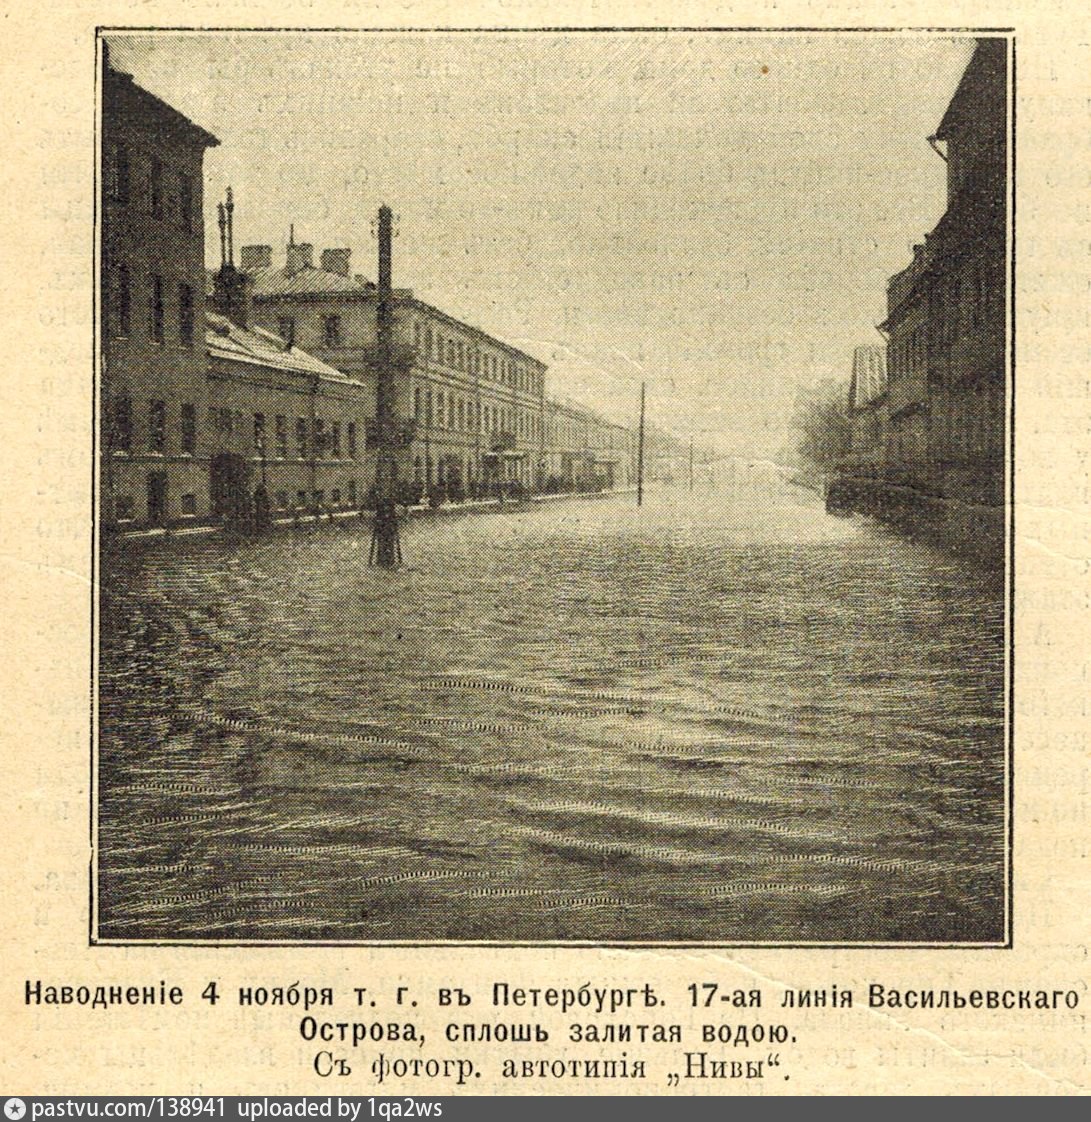 На васильевский остров я приду. Наводнение в Санкт-Петербурге 1924. Наводнение в Петербурге в 19 веке. Наводнение в Питере 1824. Потоп в Санкт-Петербурге 1824 года.